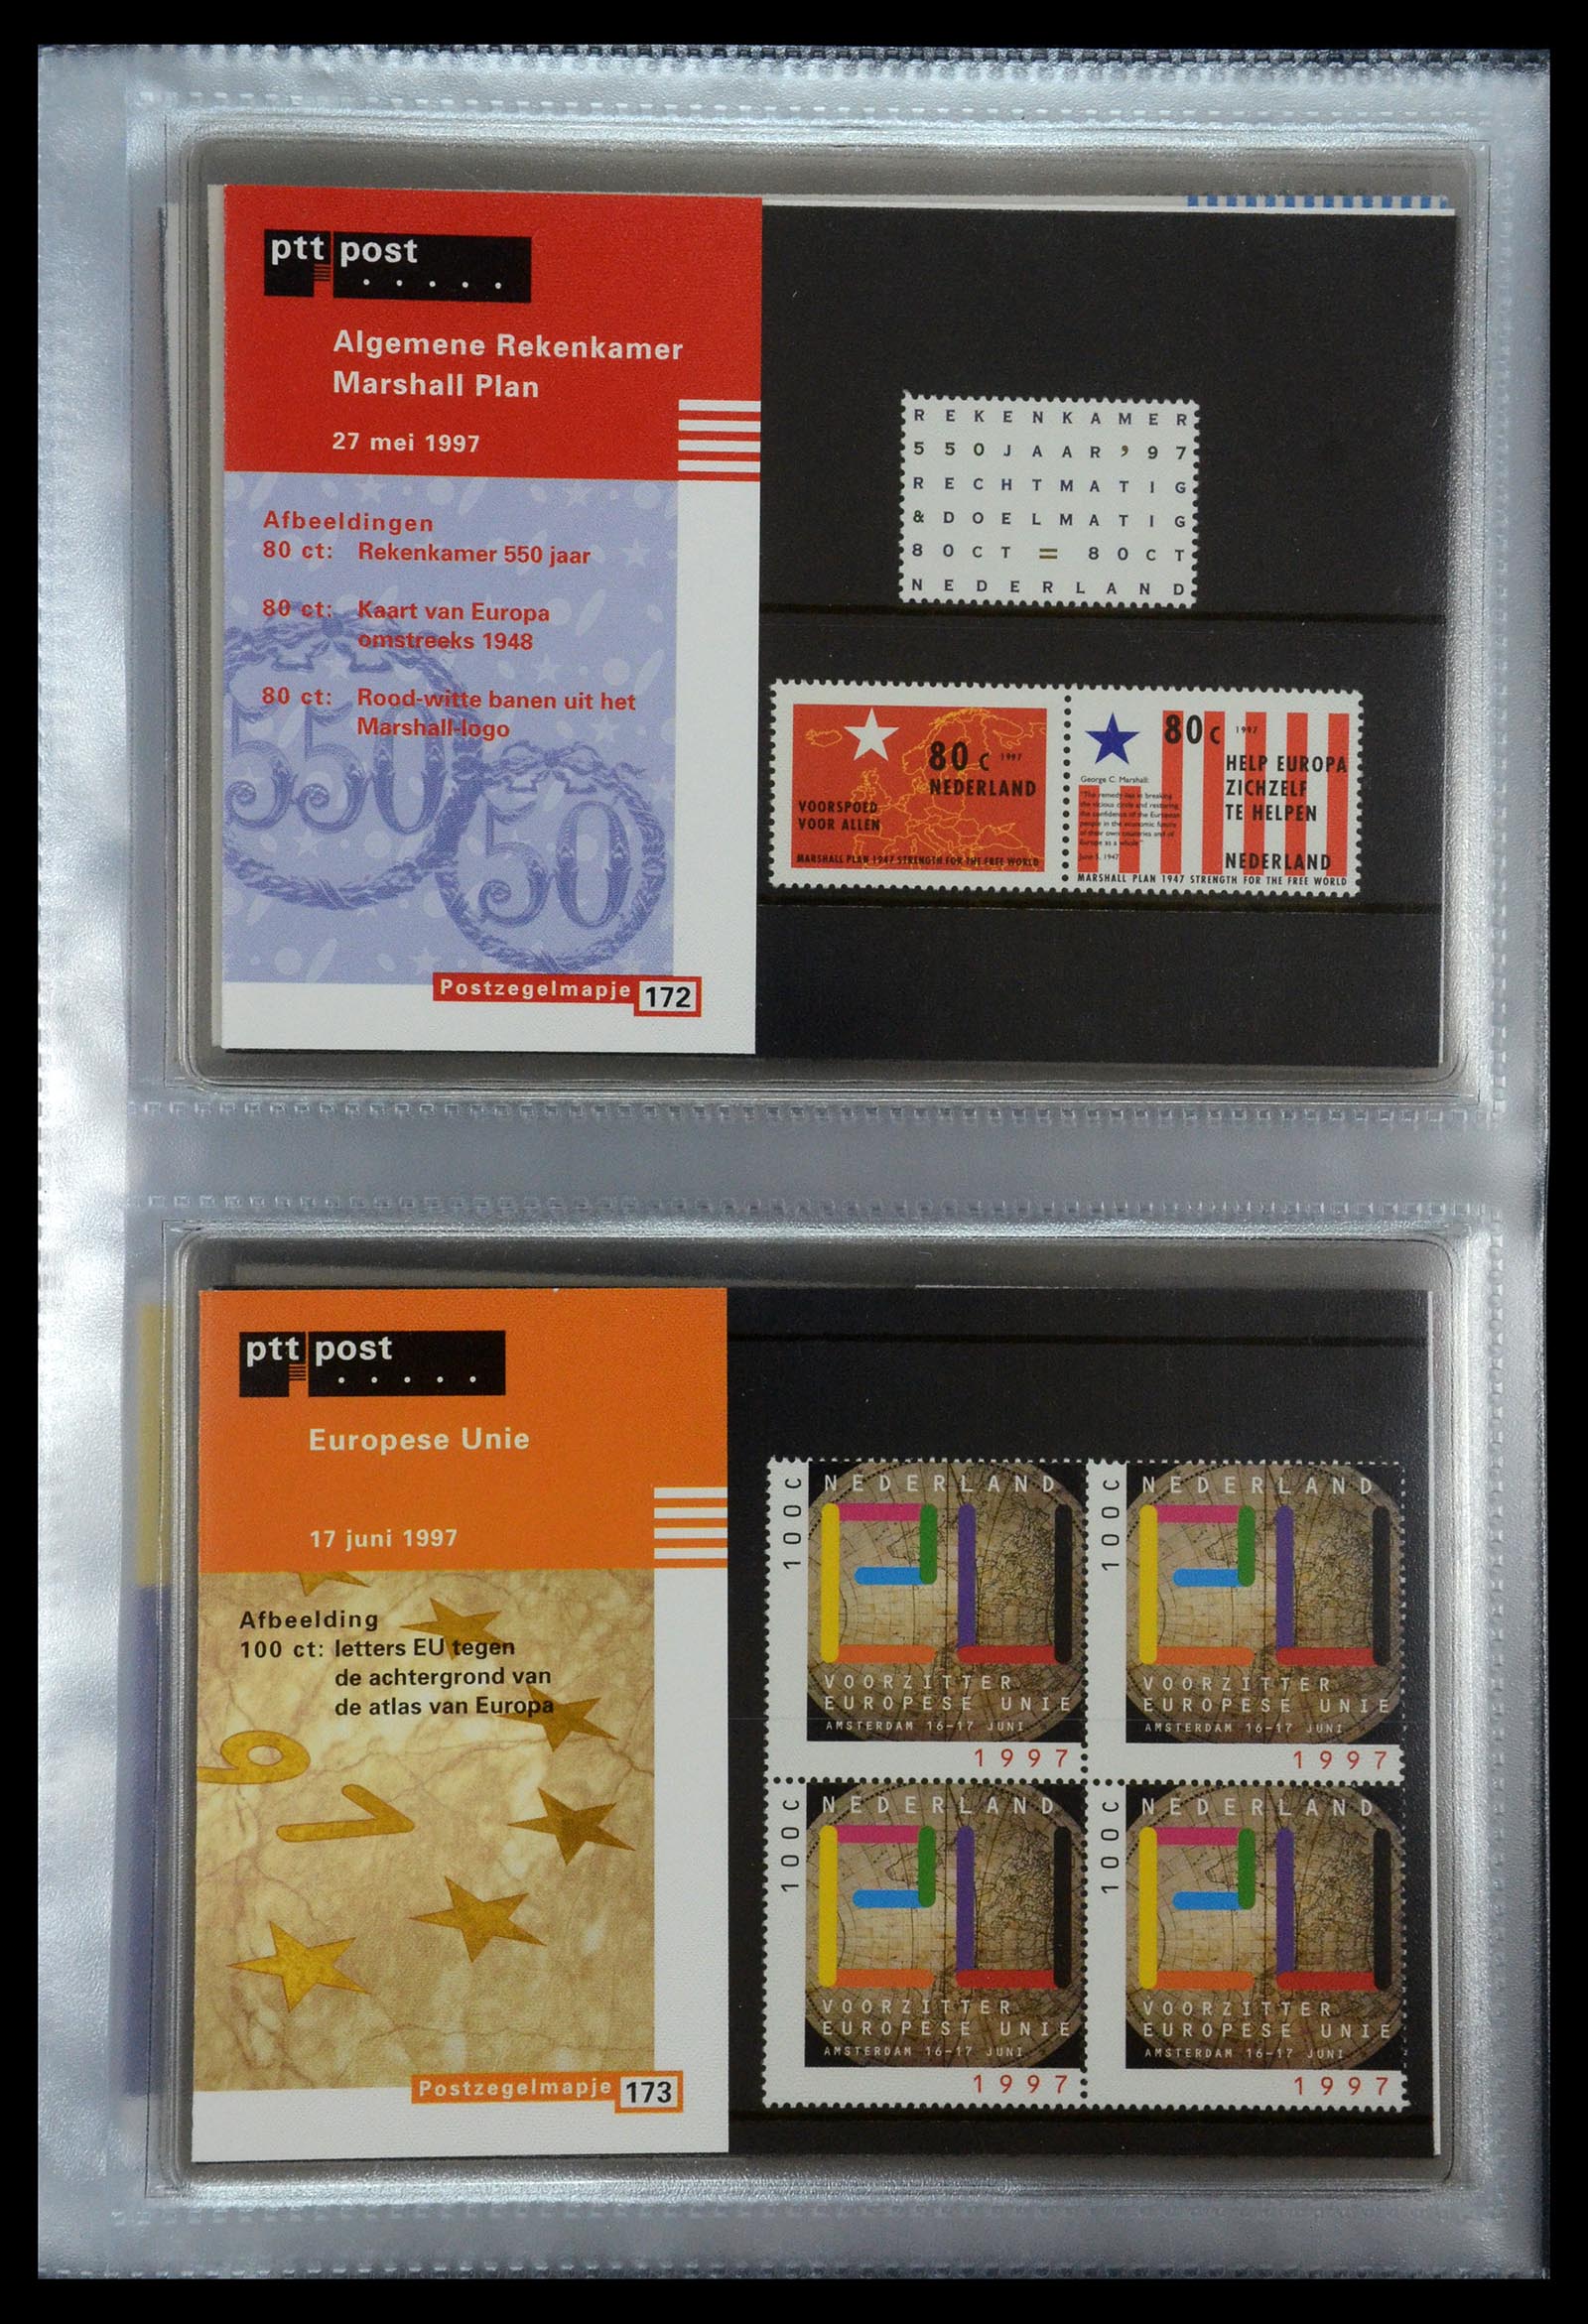 35144 089 - Stamp Collection 35144 Netherlands PTT presentation packs 1982-2021!